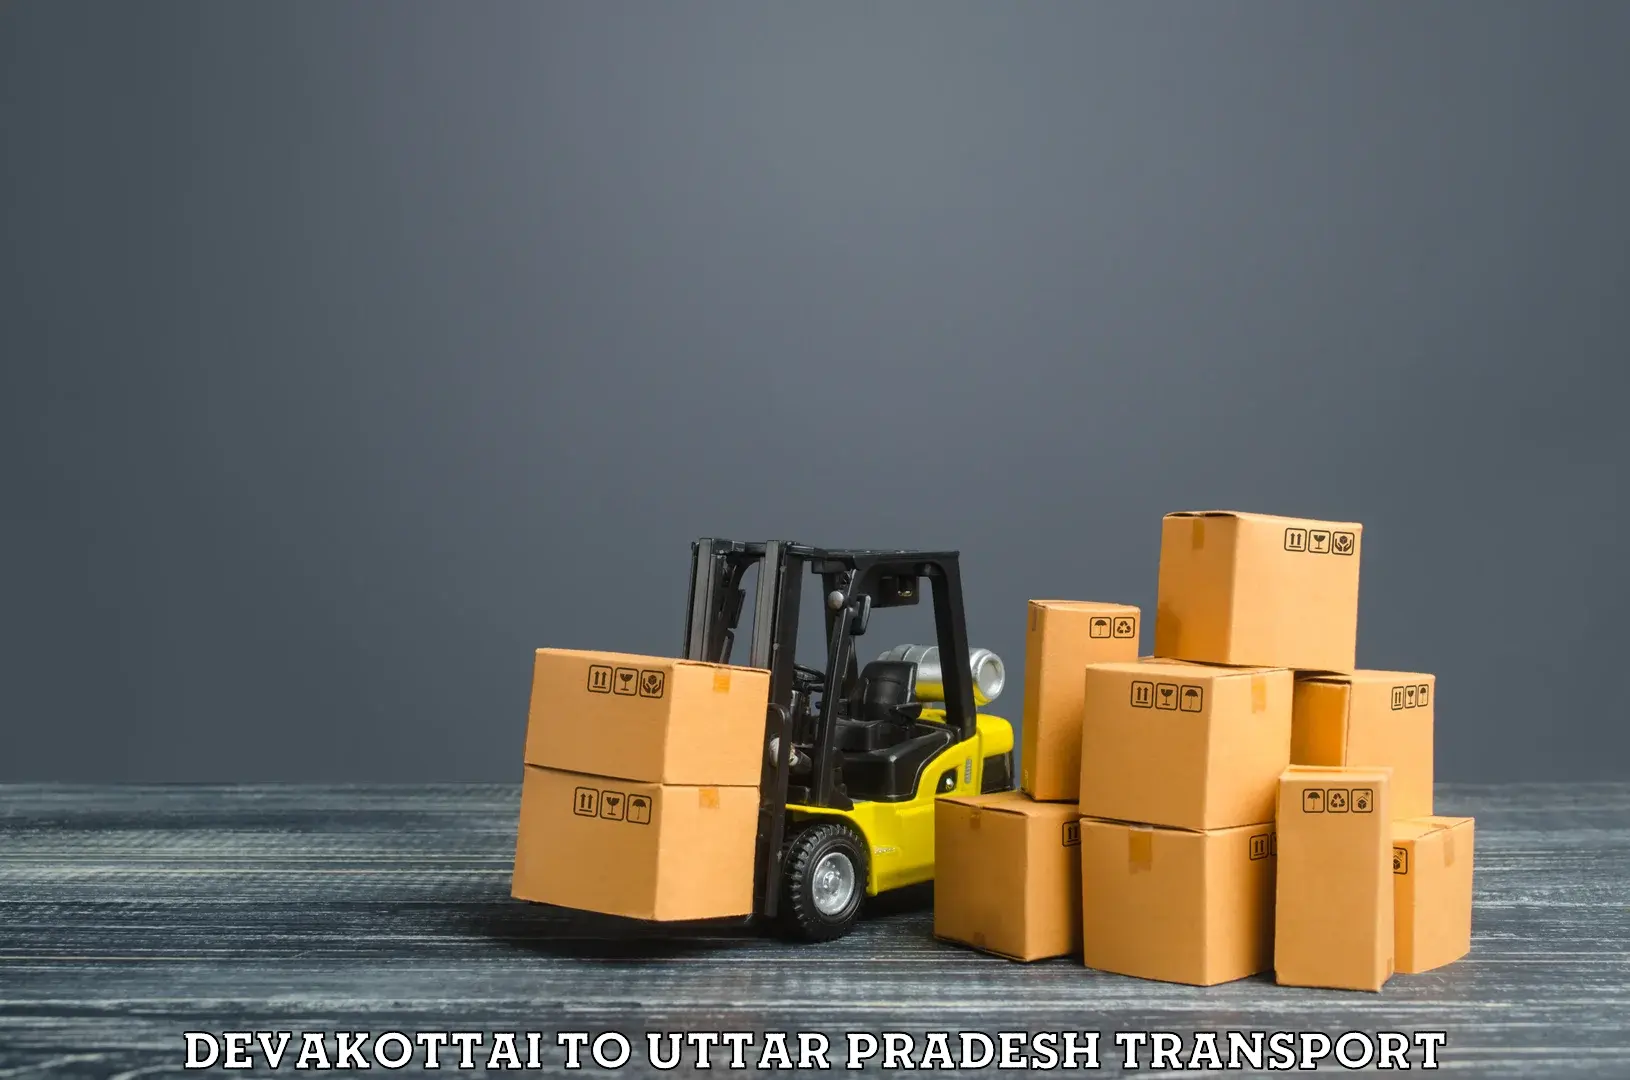 Container transport service Devakottai to Salemgarh